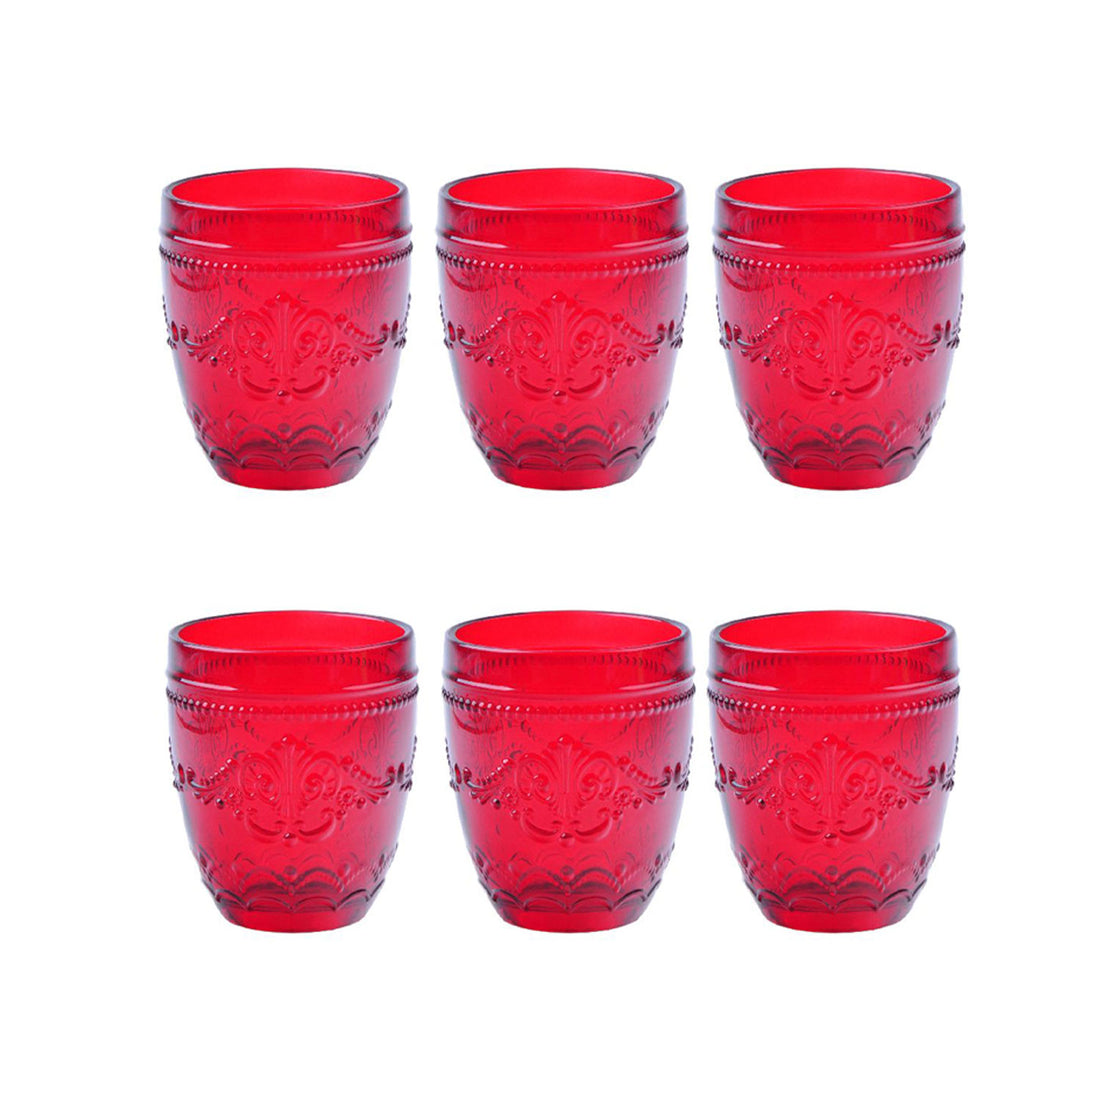 BRANDANI Bicchiere Rouge Rosso Set 6 Pezzi Vetro 10cm Tavola di Natale